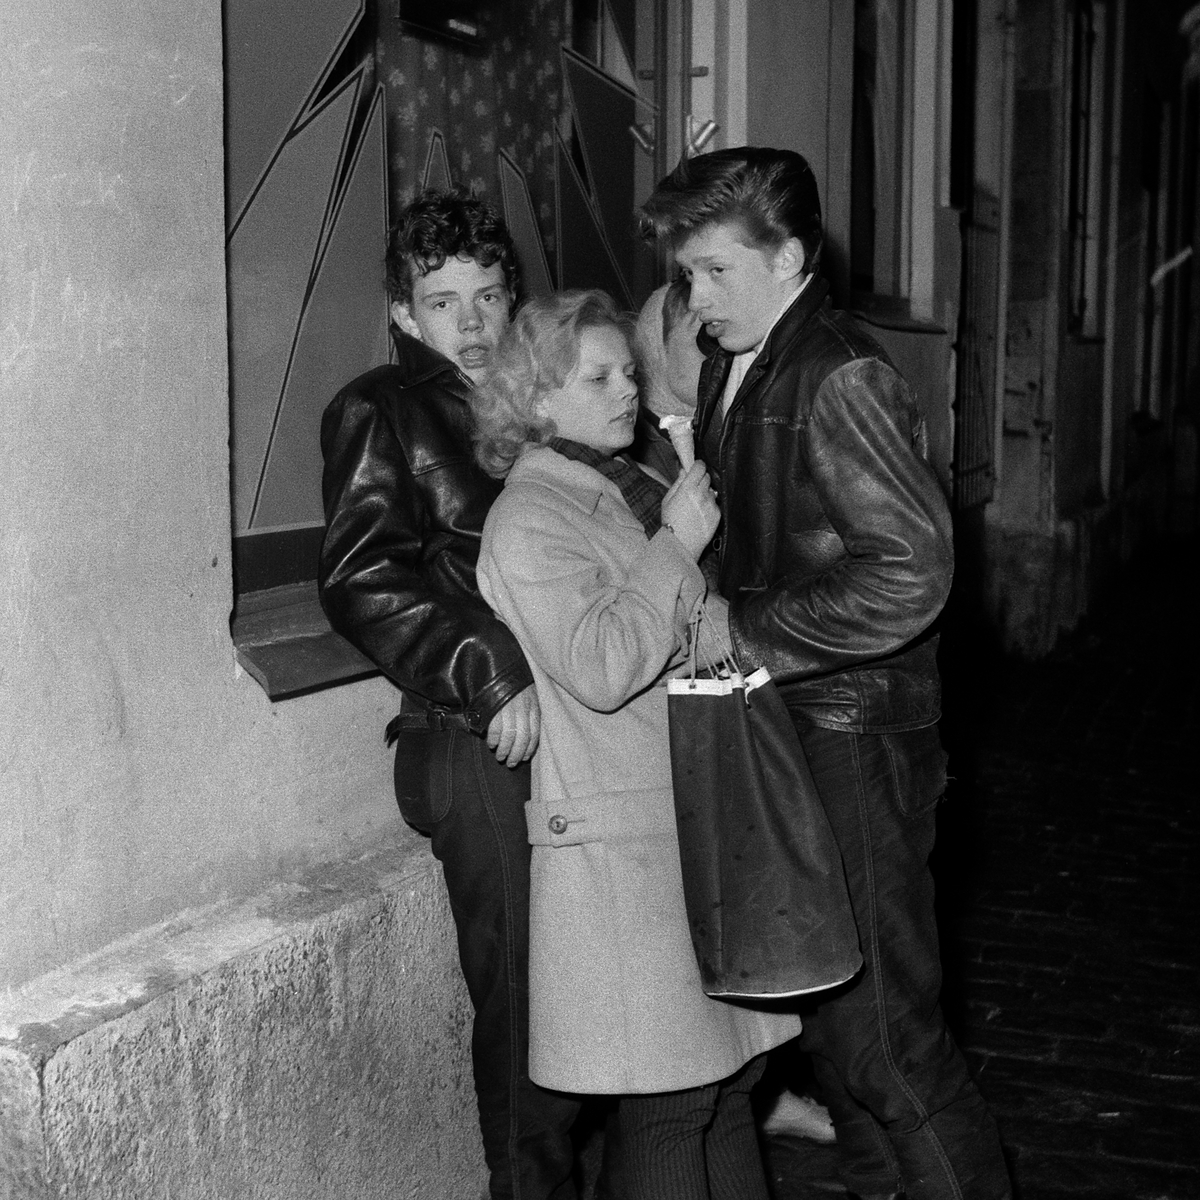 Påskkravaller på stan vid Klostergatan, 1958.